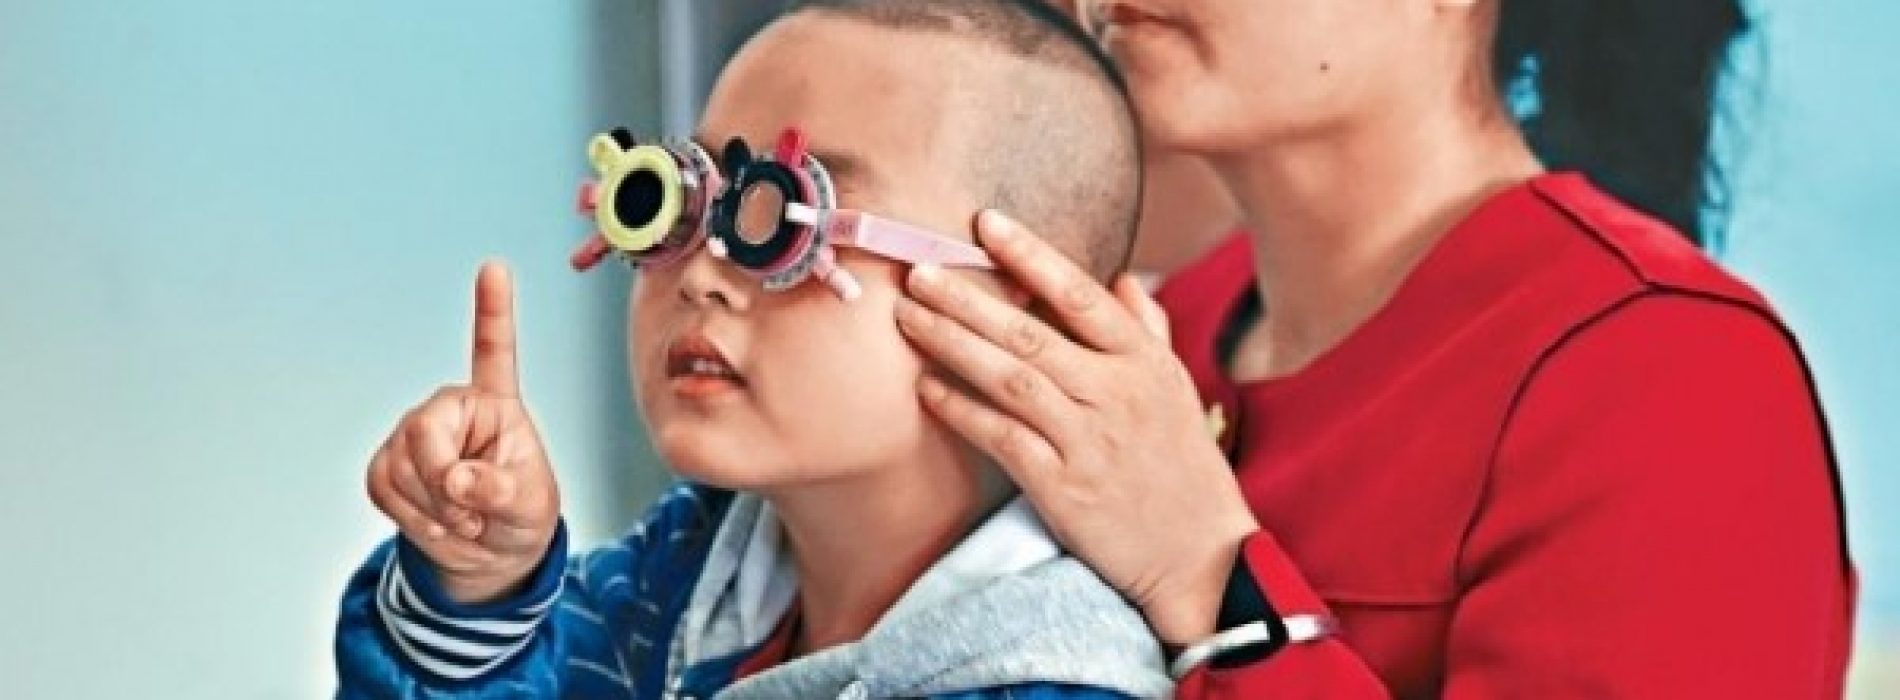 「電子奶嘴」湊仔變害仔 大近視學童 視網膜變異隨時盲